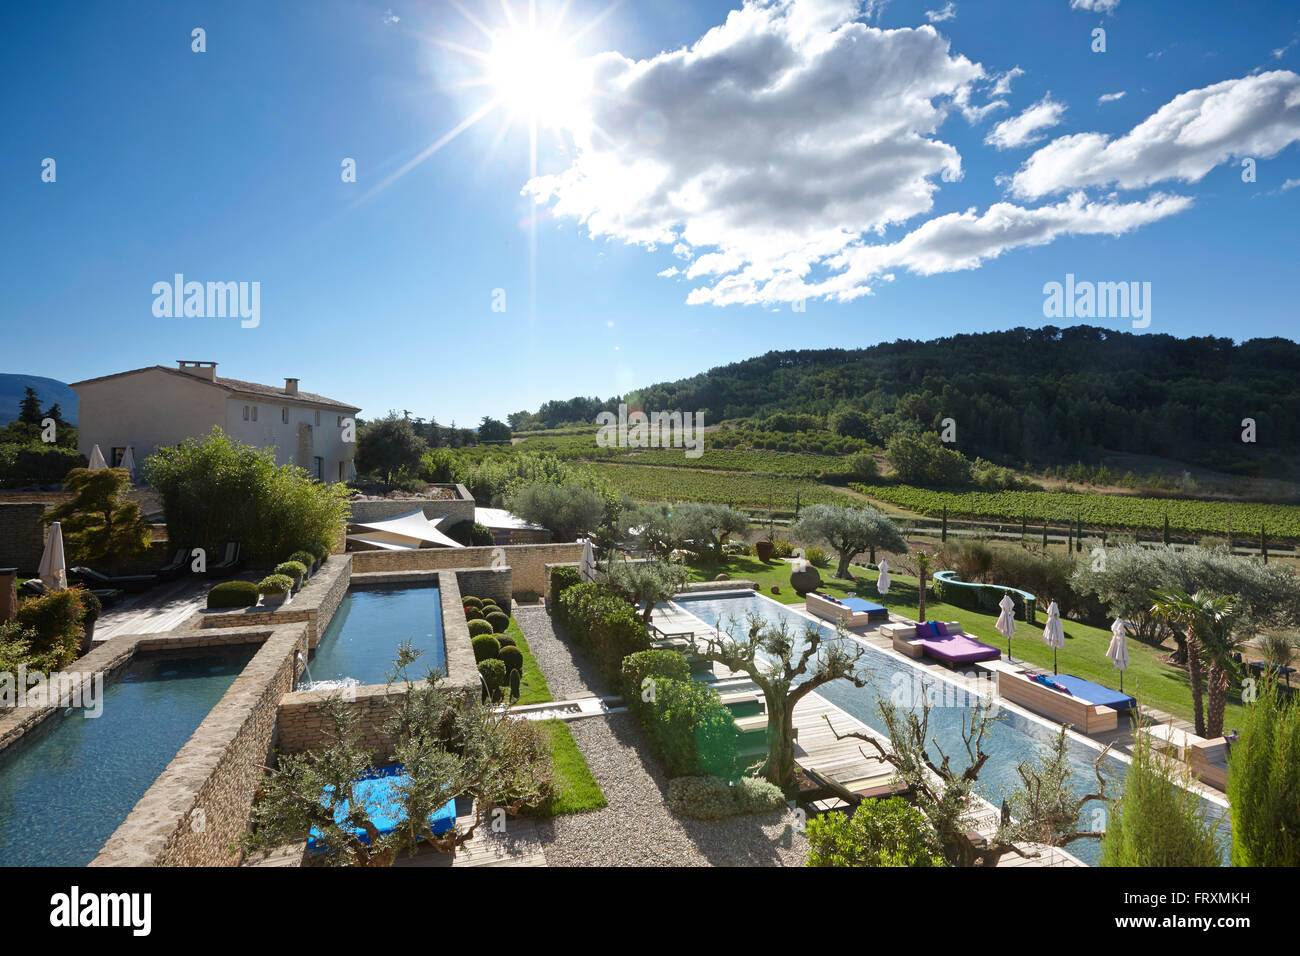 Hôtel complexe avec piscines et terrasses, Saint-Saturnin-les-Apt, Provence, France Banque D'Images